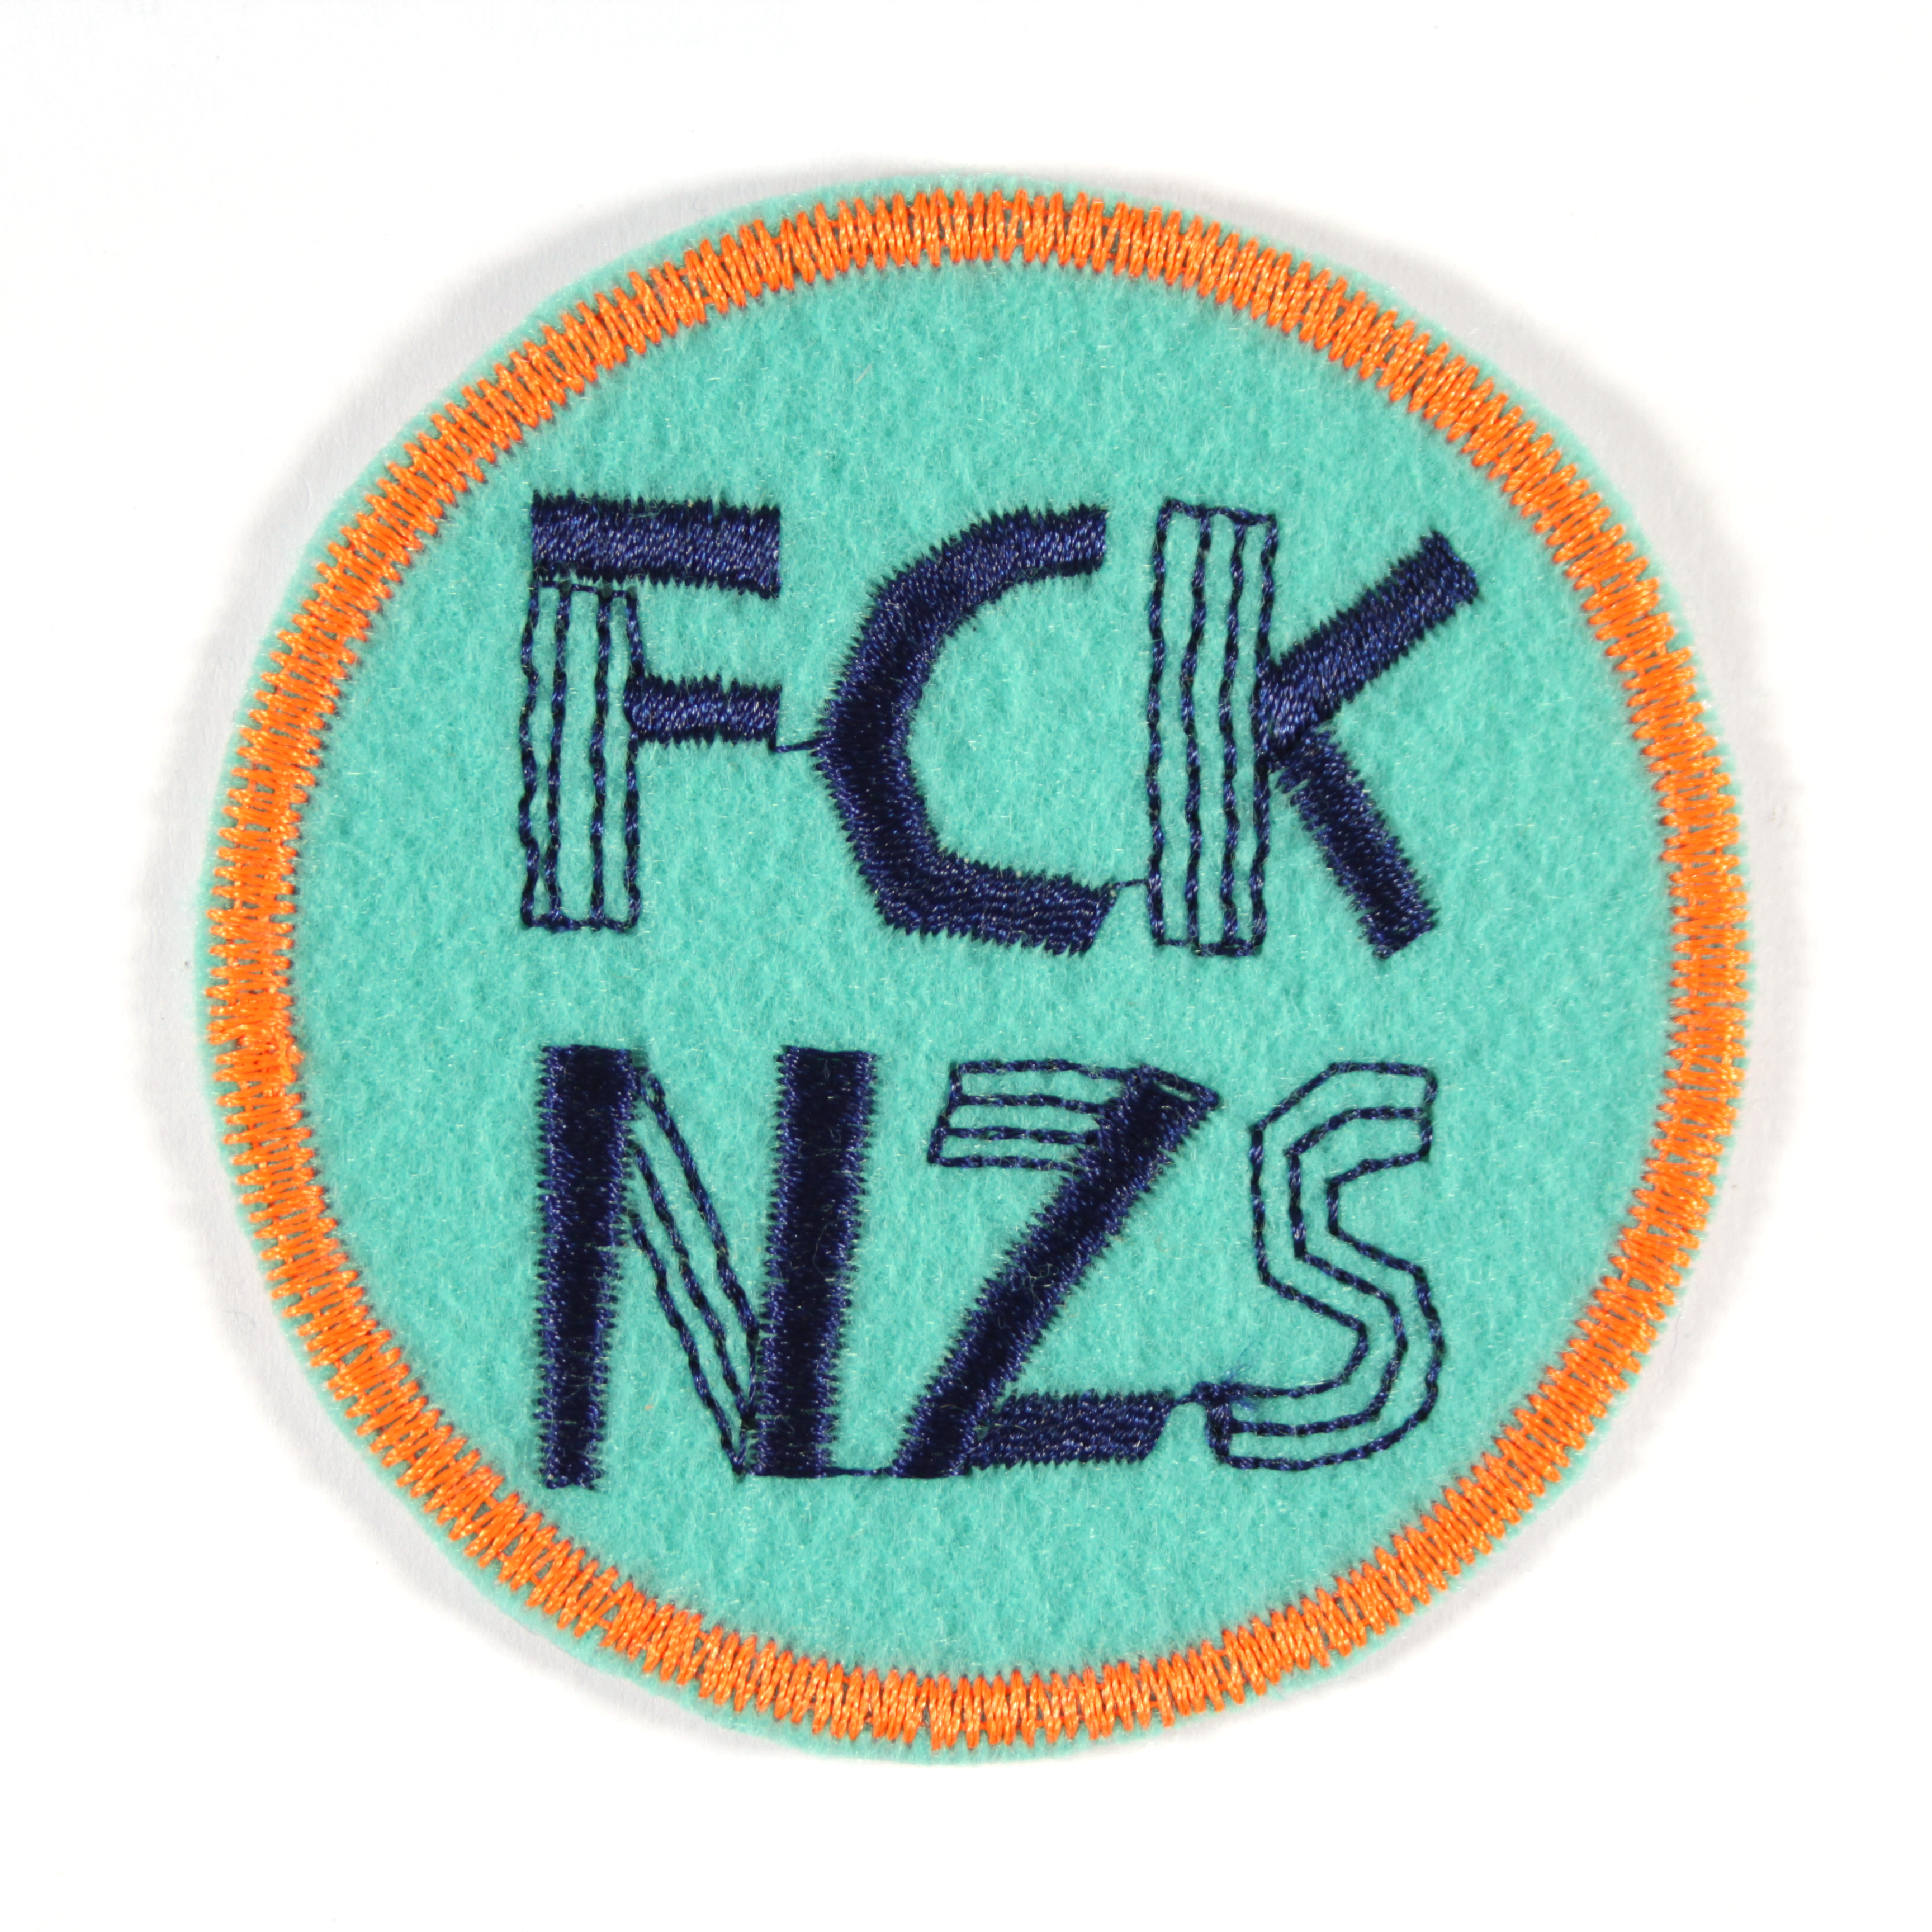 Aufnäher rund FCK NZS auf türkis mit neon orange rand